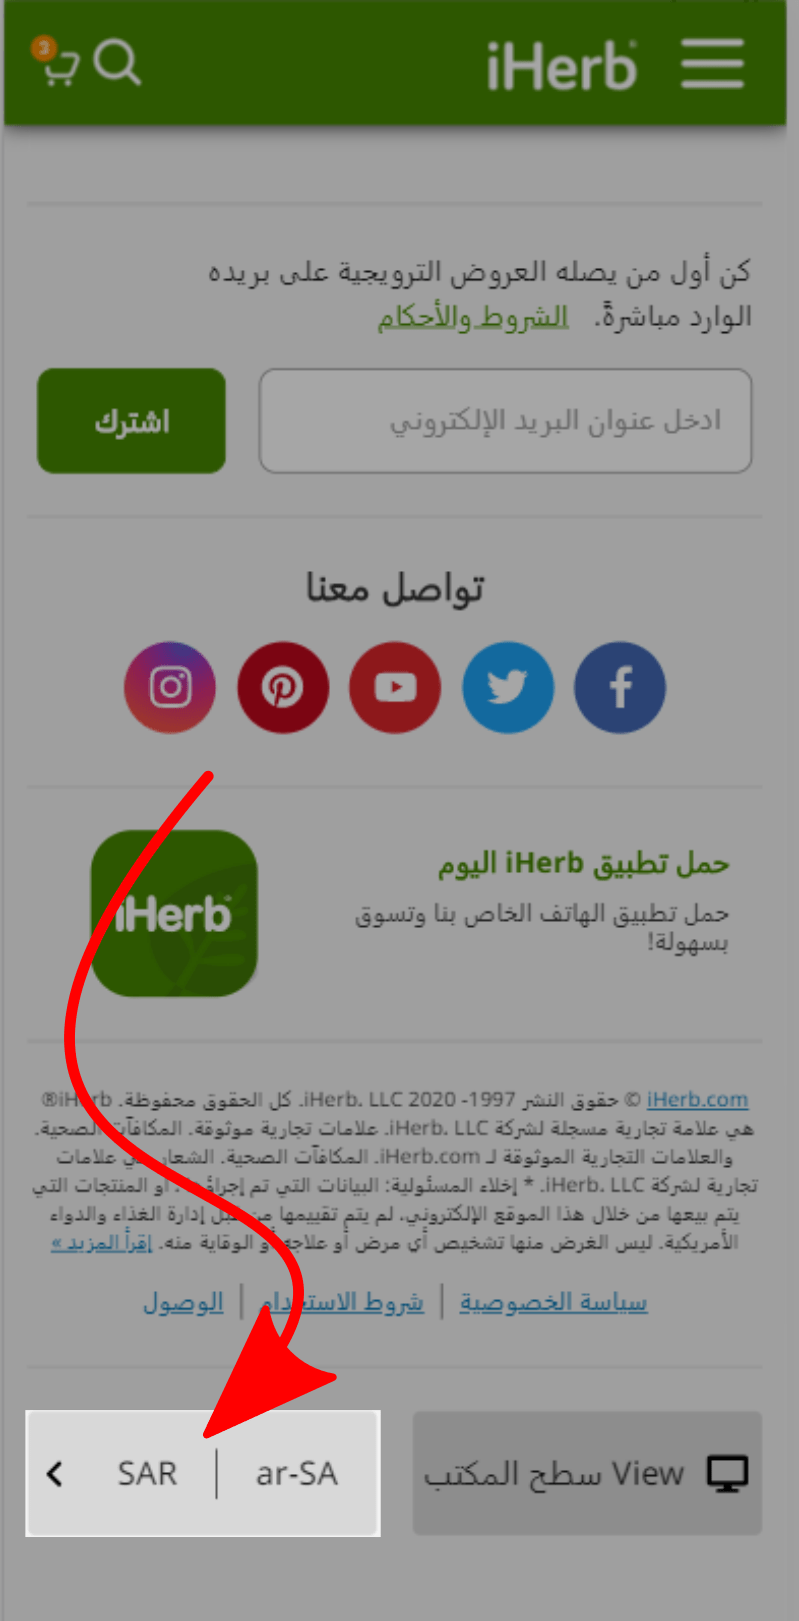 تعديل موقع اي هيرب ليكون بالعربي في اليمن